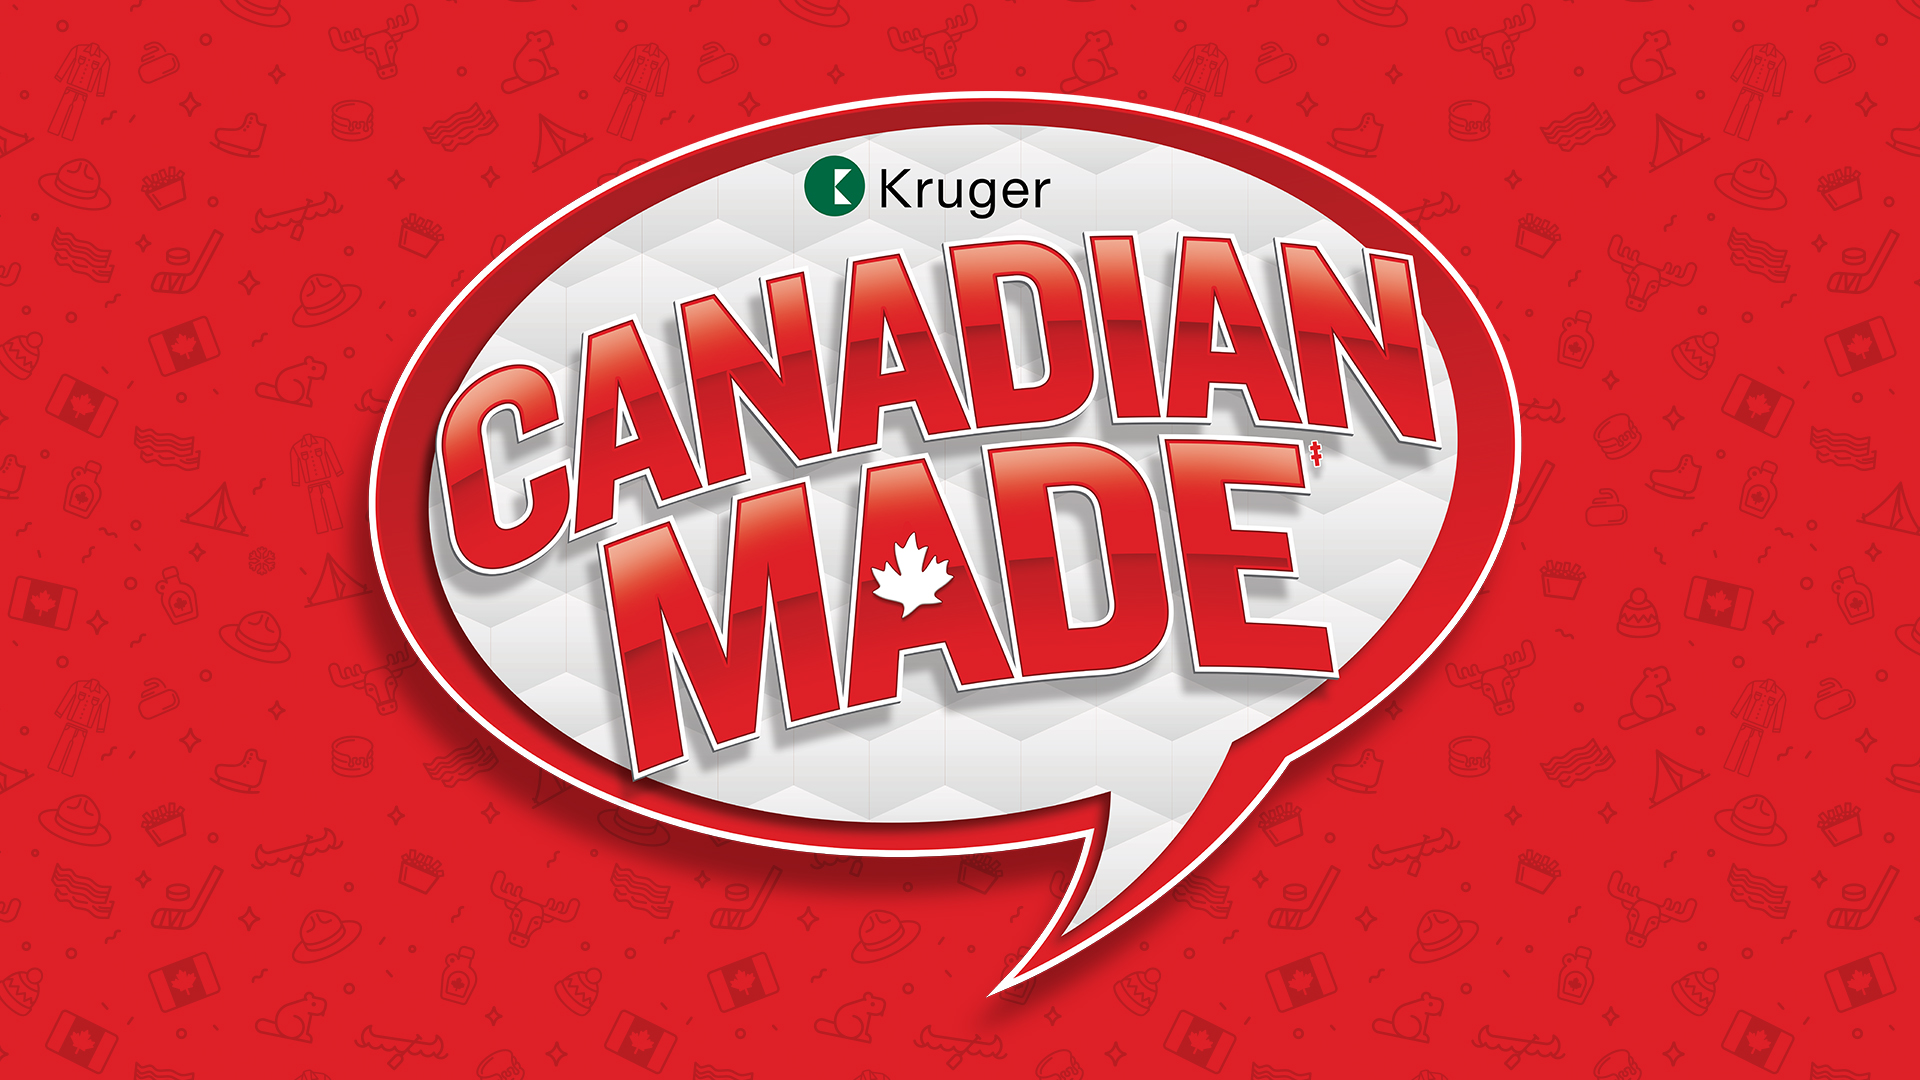 Kruger Canadian Made logo